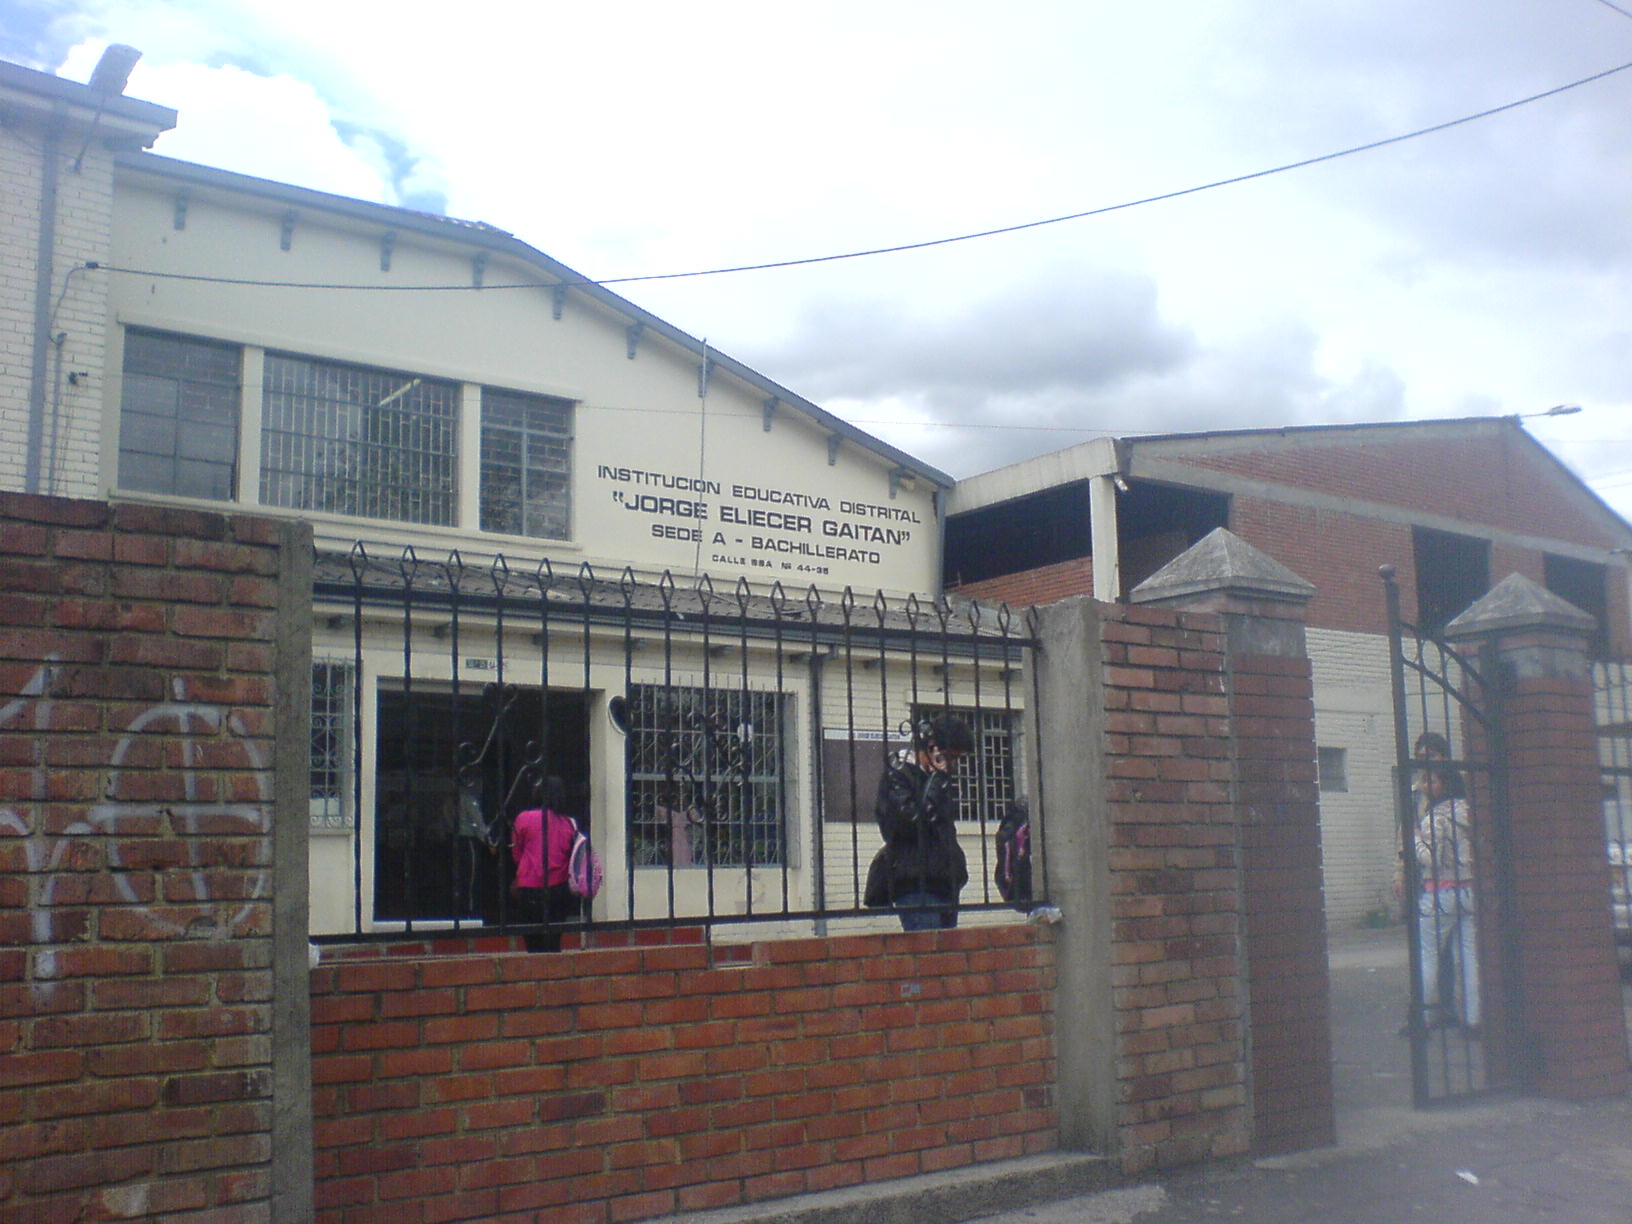 Imagen primera sede del Colegio y de la Universidad Municipal. Hoy, IED Jorge Eliécer Gaitán.